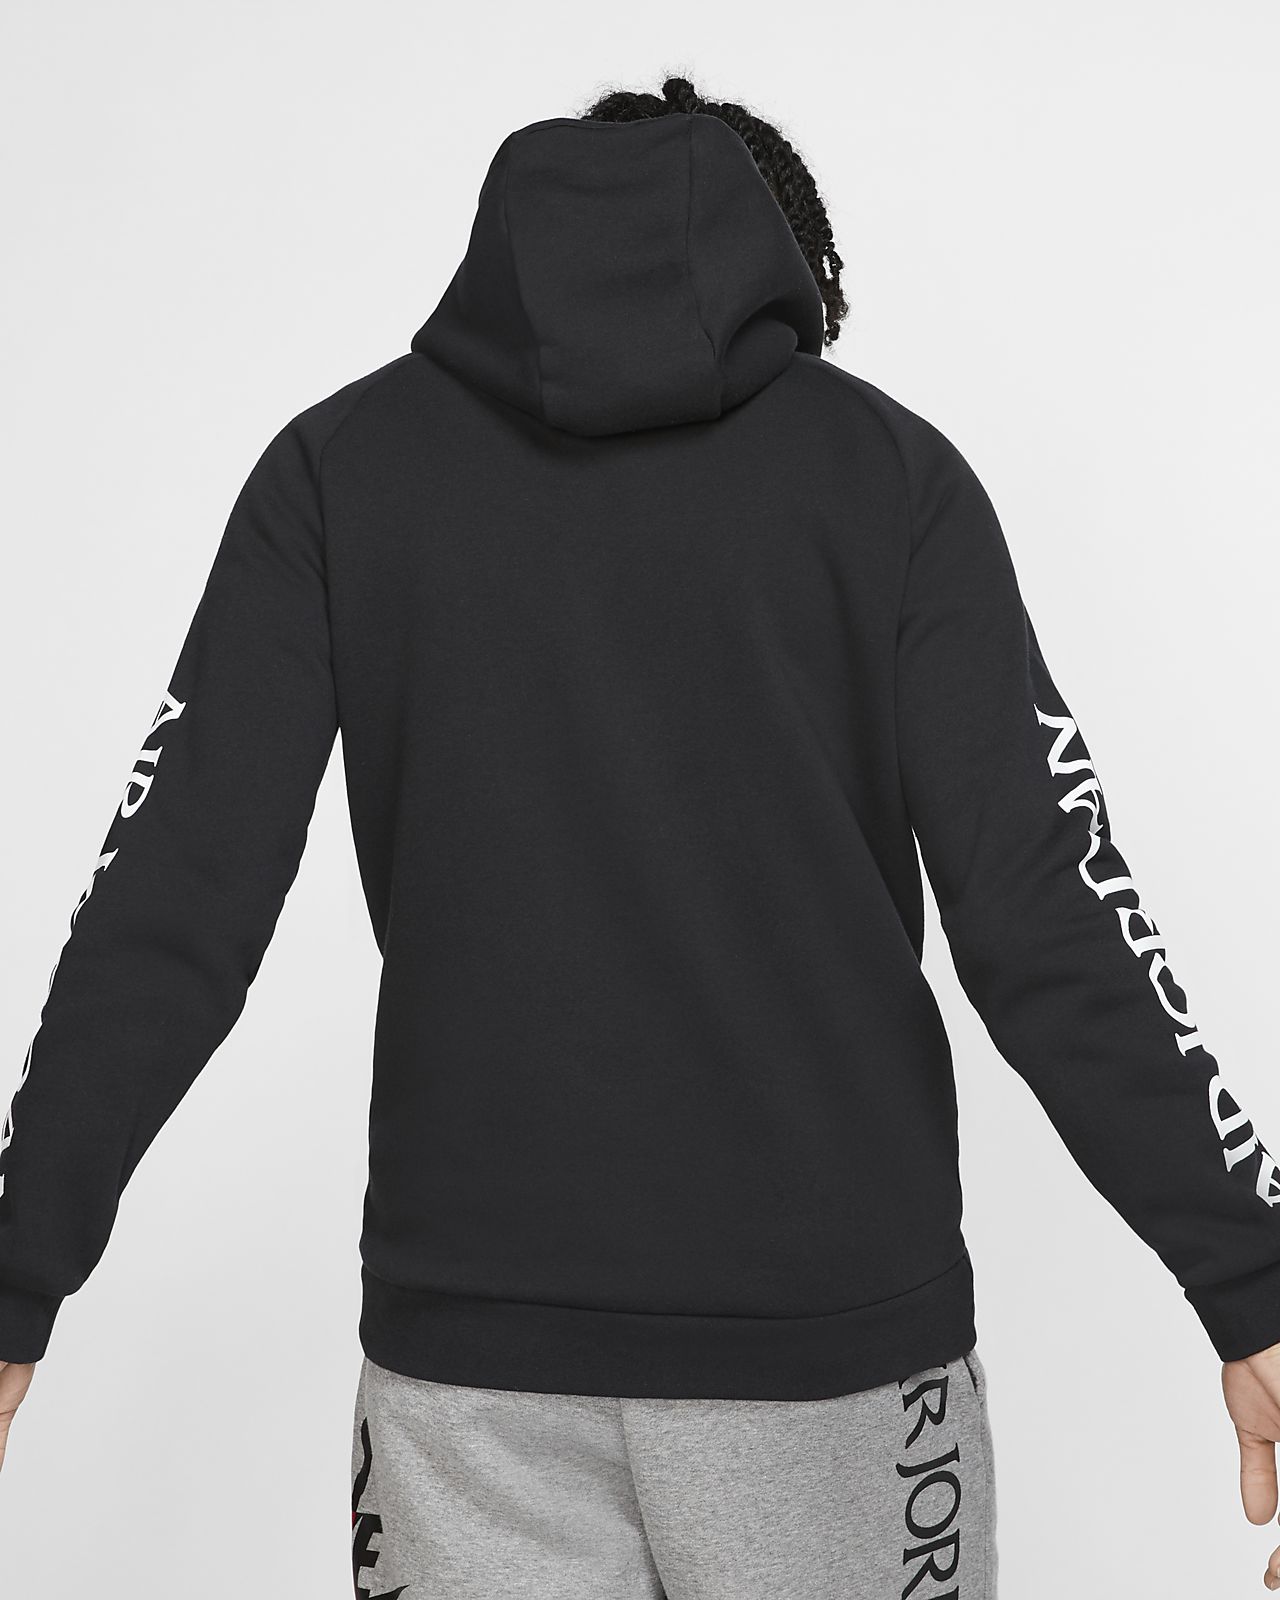 black jordan hoodie